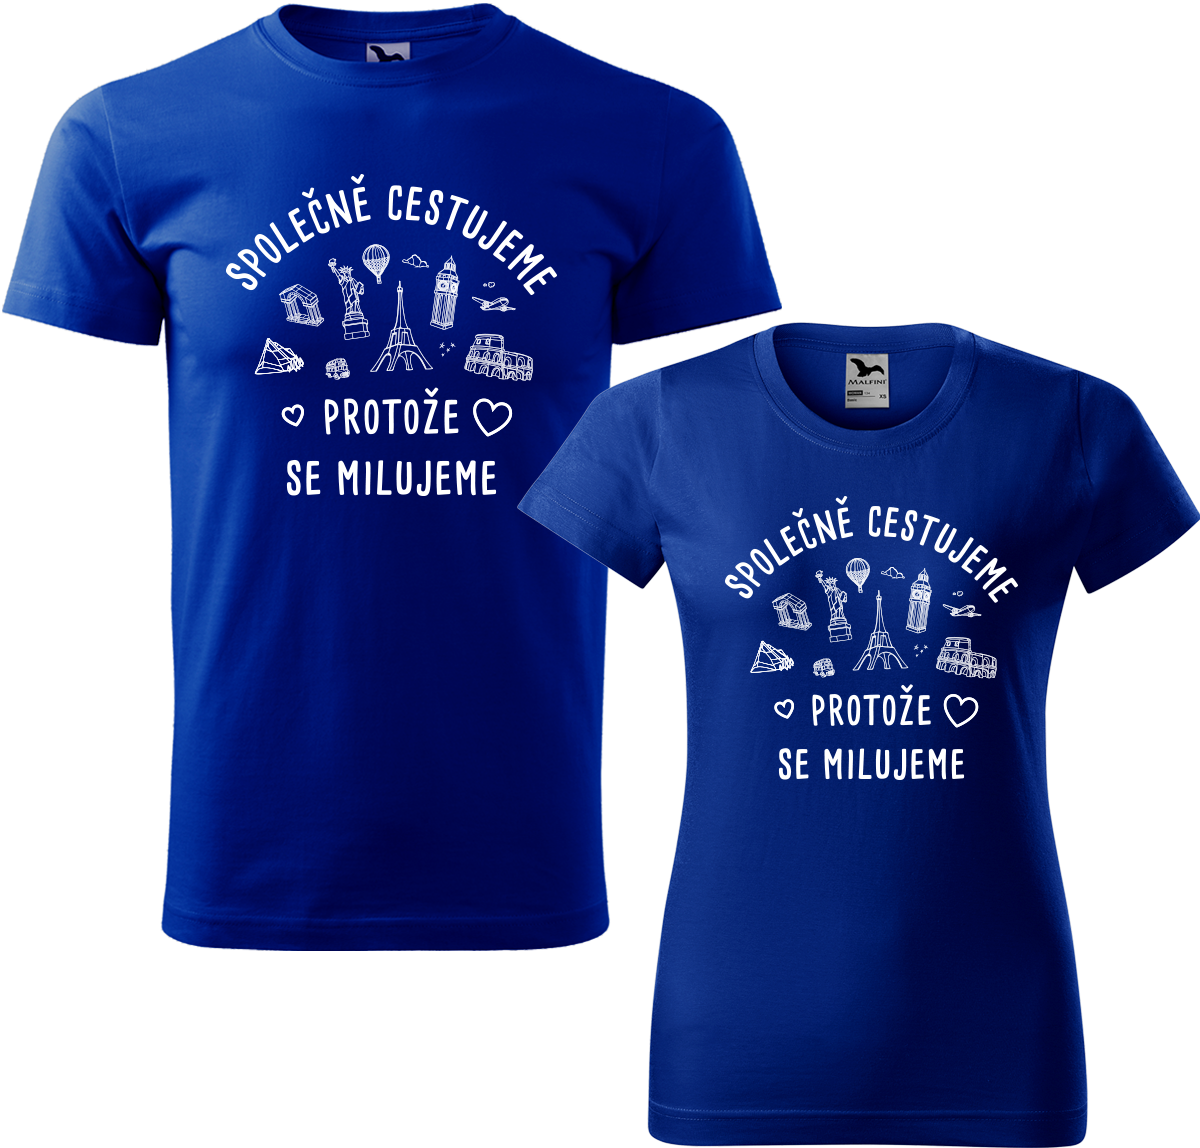 Tričko pro páry - Společně cestujeme protože se milujeme Barva: Královská modrá (05), Velikost dámské tričko: XL, Velikost pánské tričko: XL